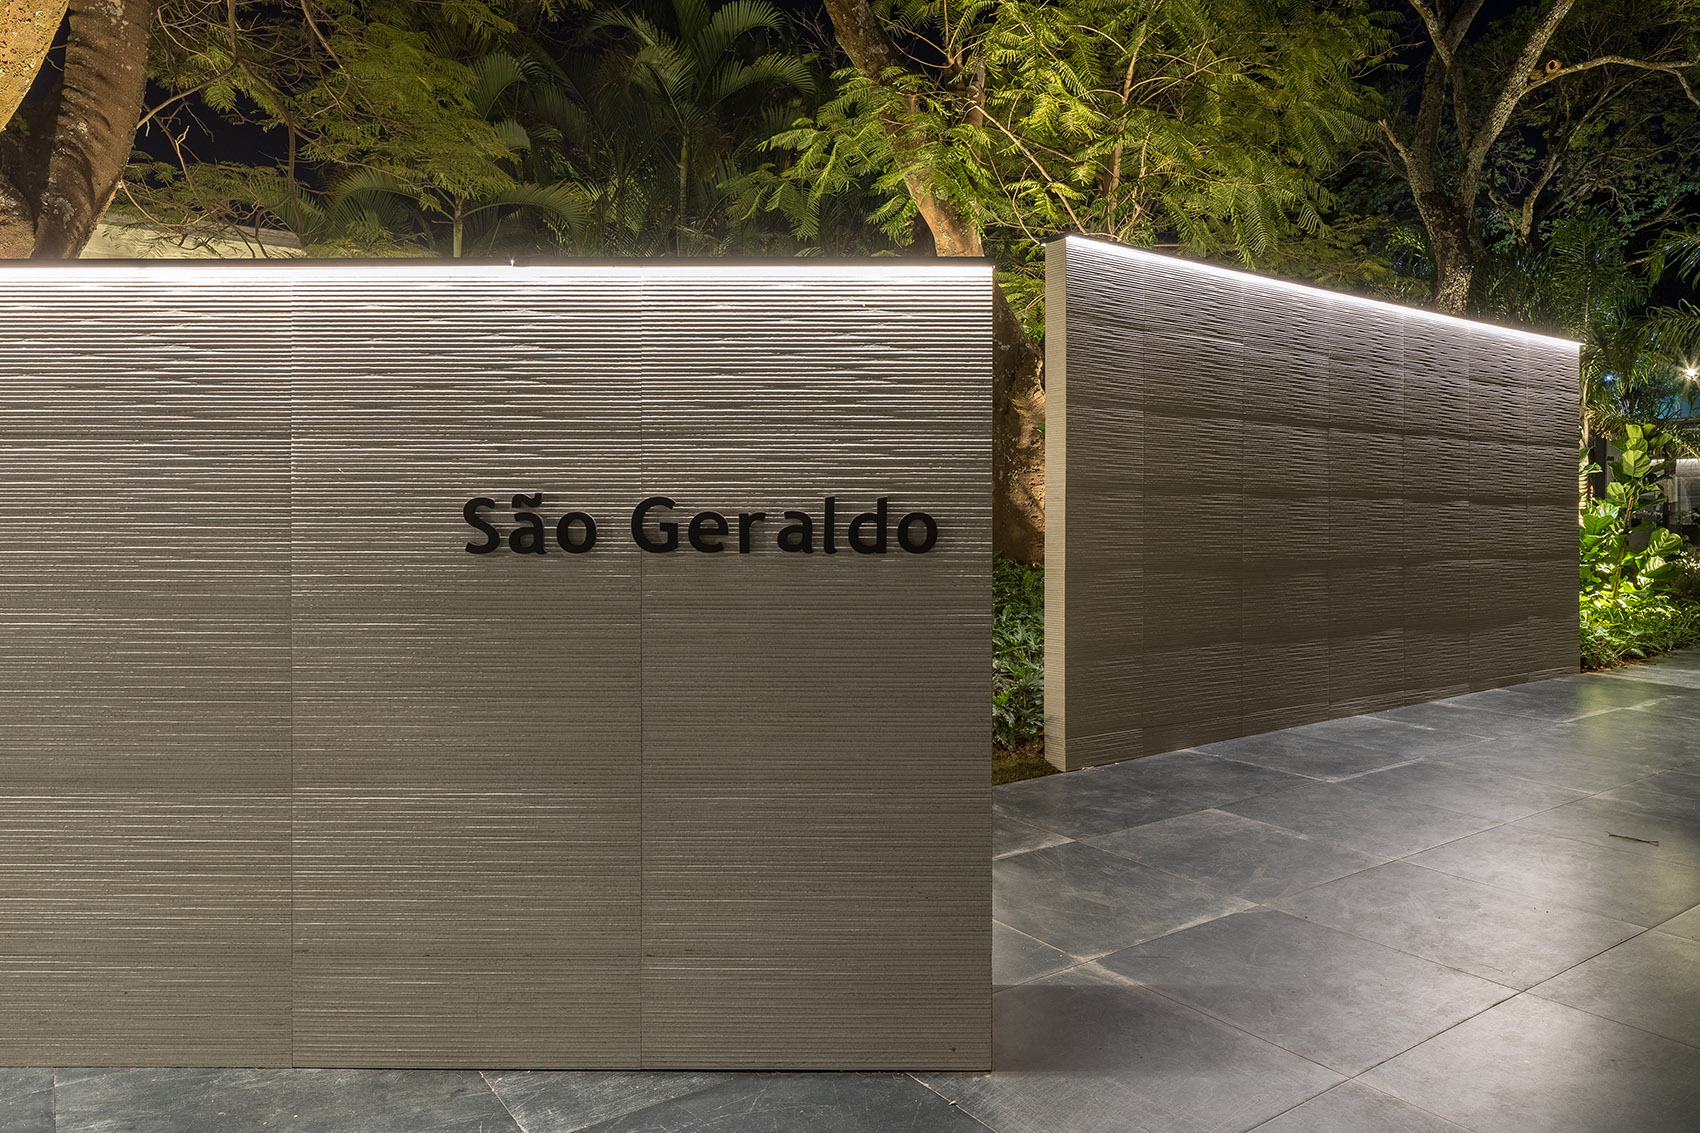 São Geraldo展览空间，巴西/转角遇到惊喜-51